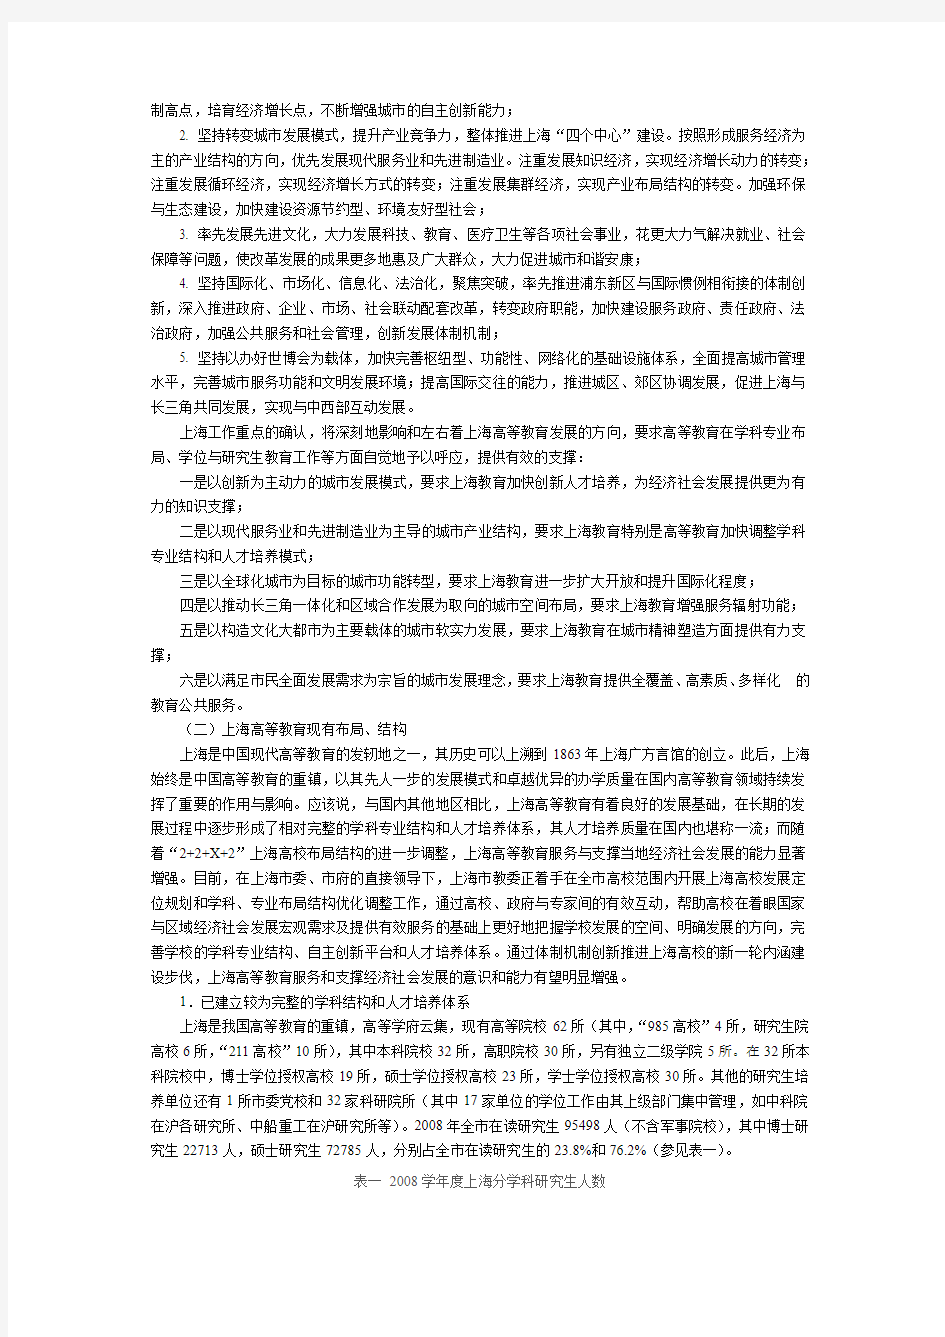 上海市新增博士硕士学位授予单位立项建设规划